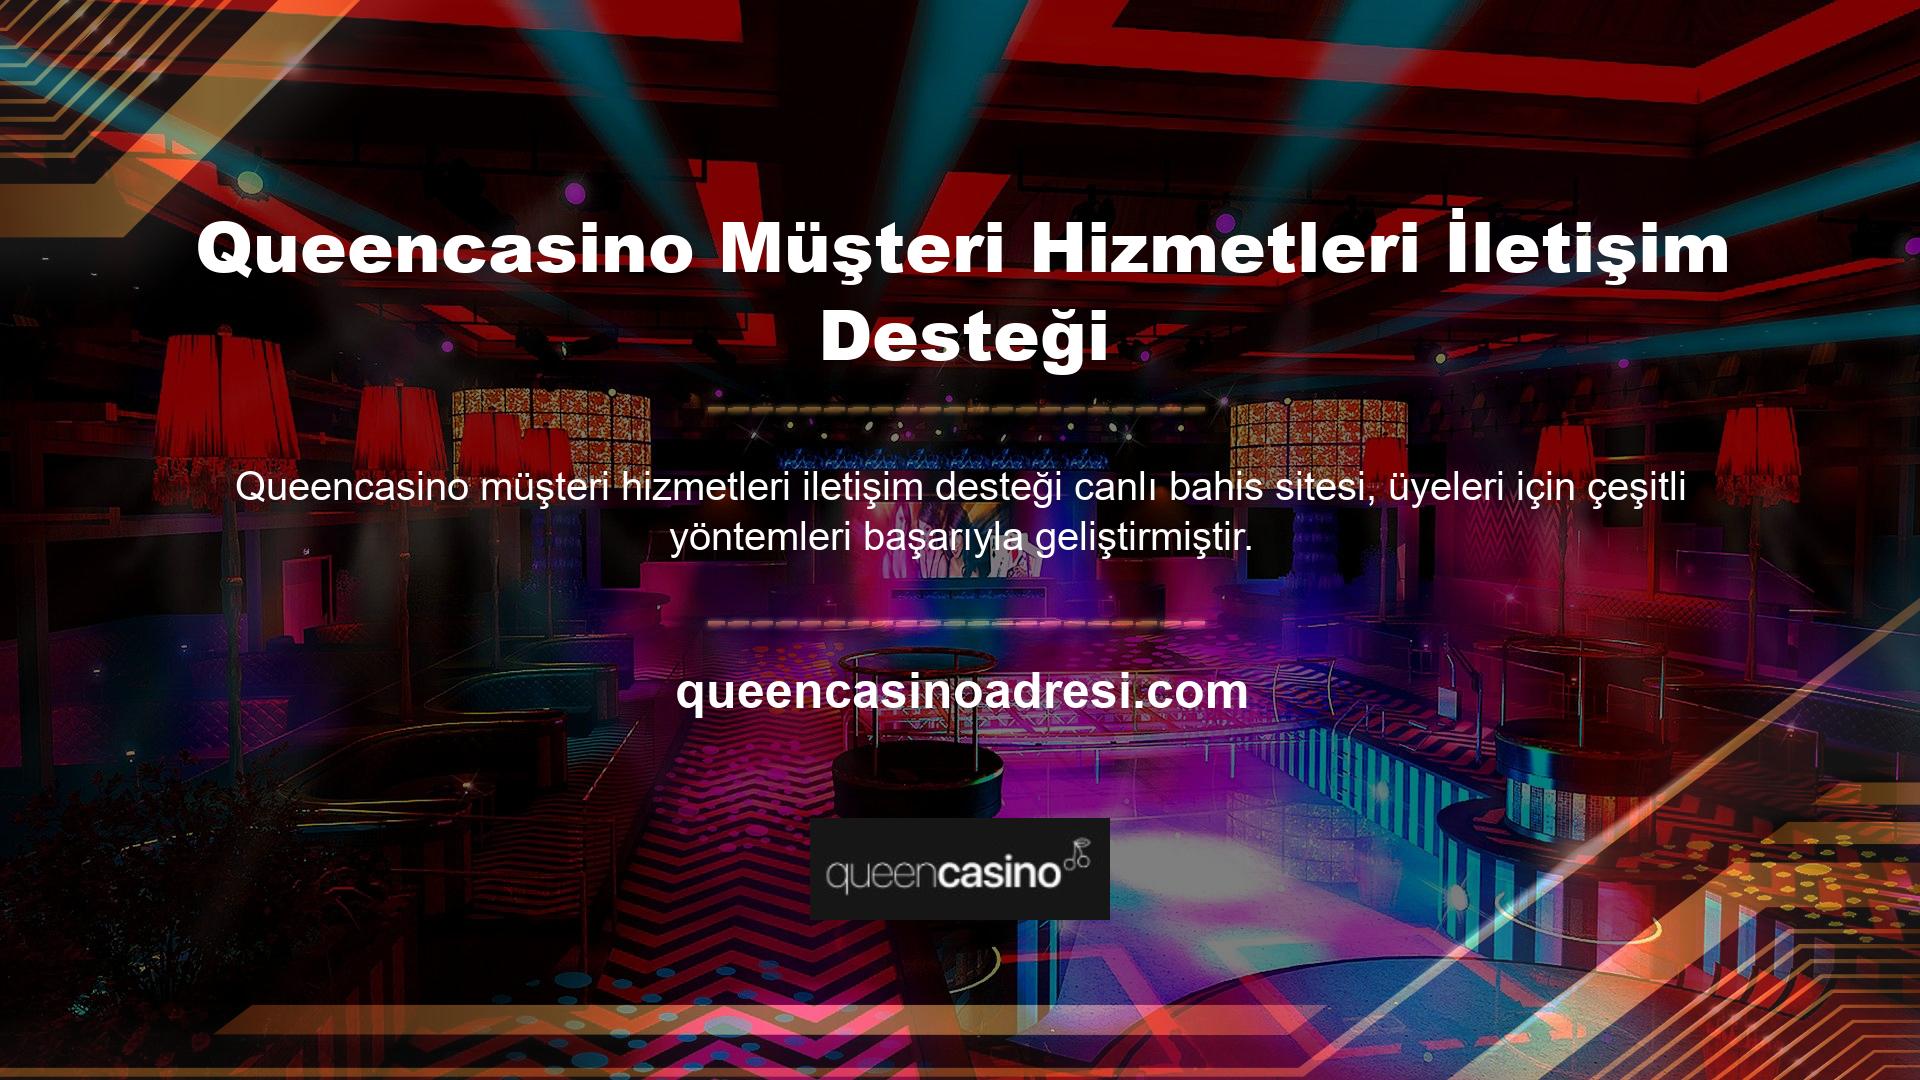 Tüm Queencasino müşteri hizmetleri iletişim kanalları çevrimiçi olarak mevcuttur